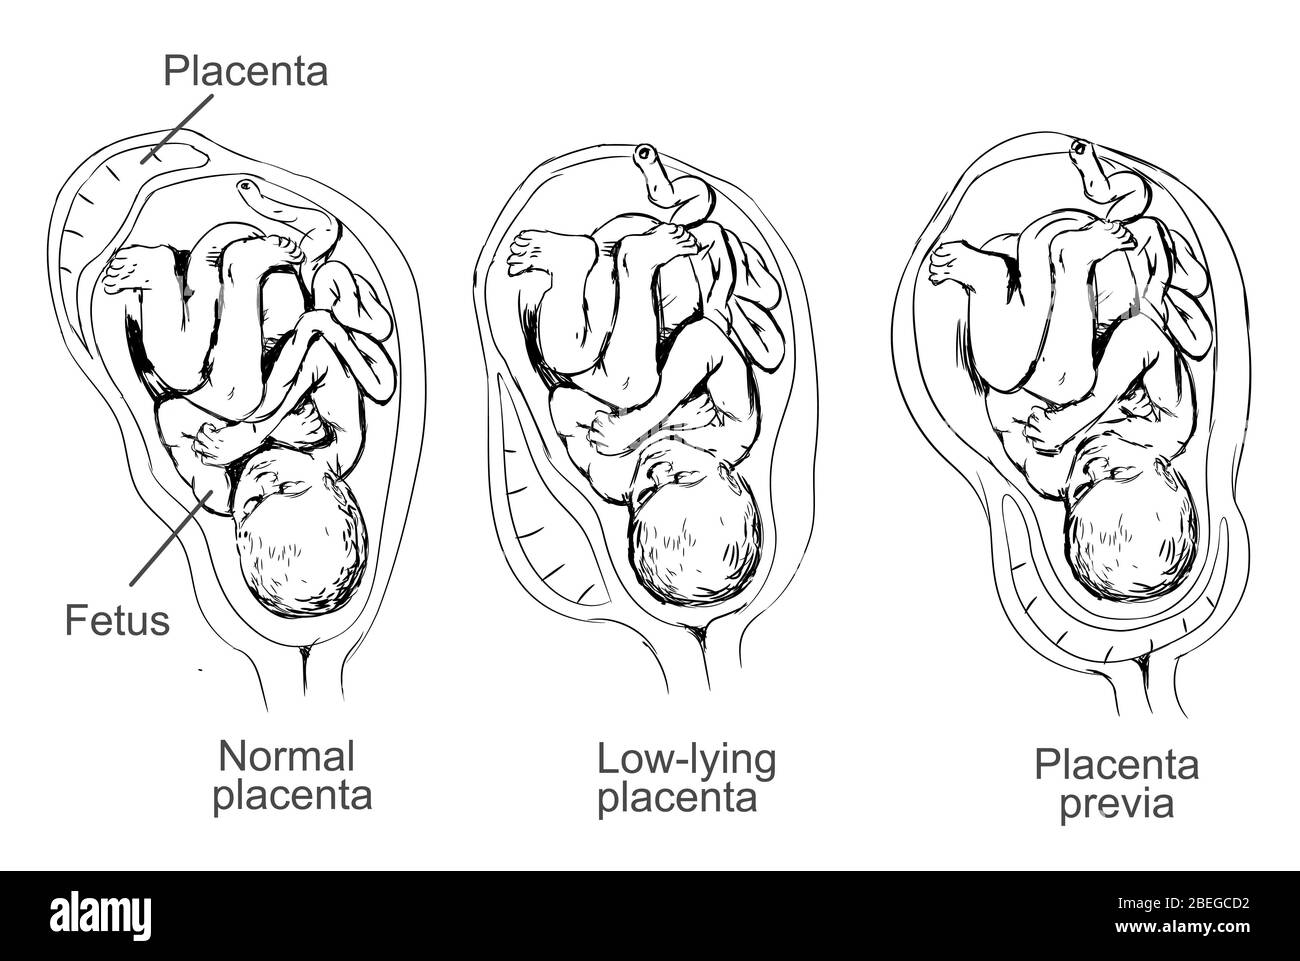 Ilustración de la placenta previa, una afección en la cual la placenta se encuentra baja en el útero y cubre el cuello uterino, causando complicaciones durante el embarazo. Foto de stock